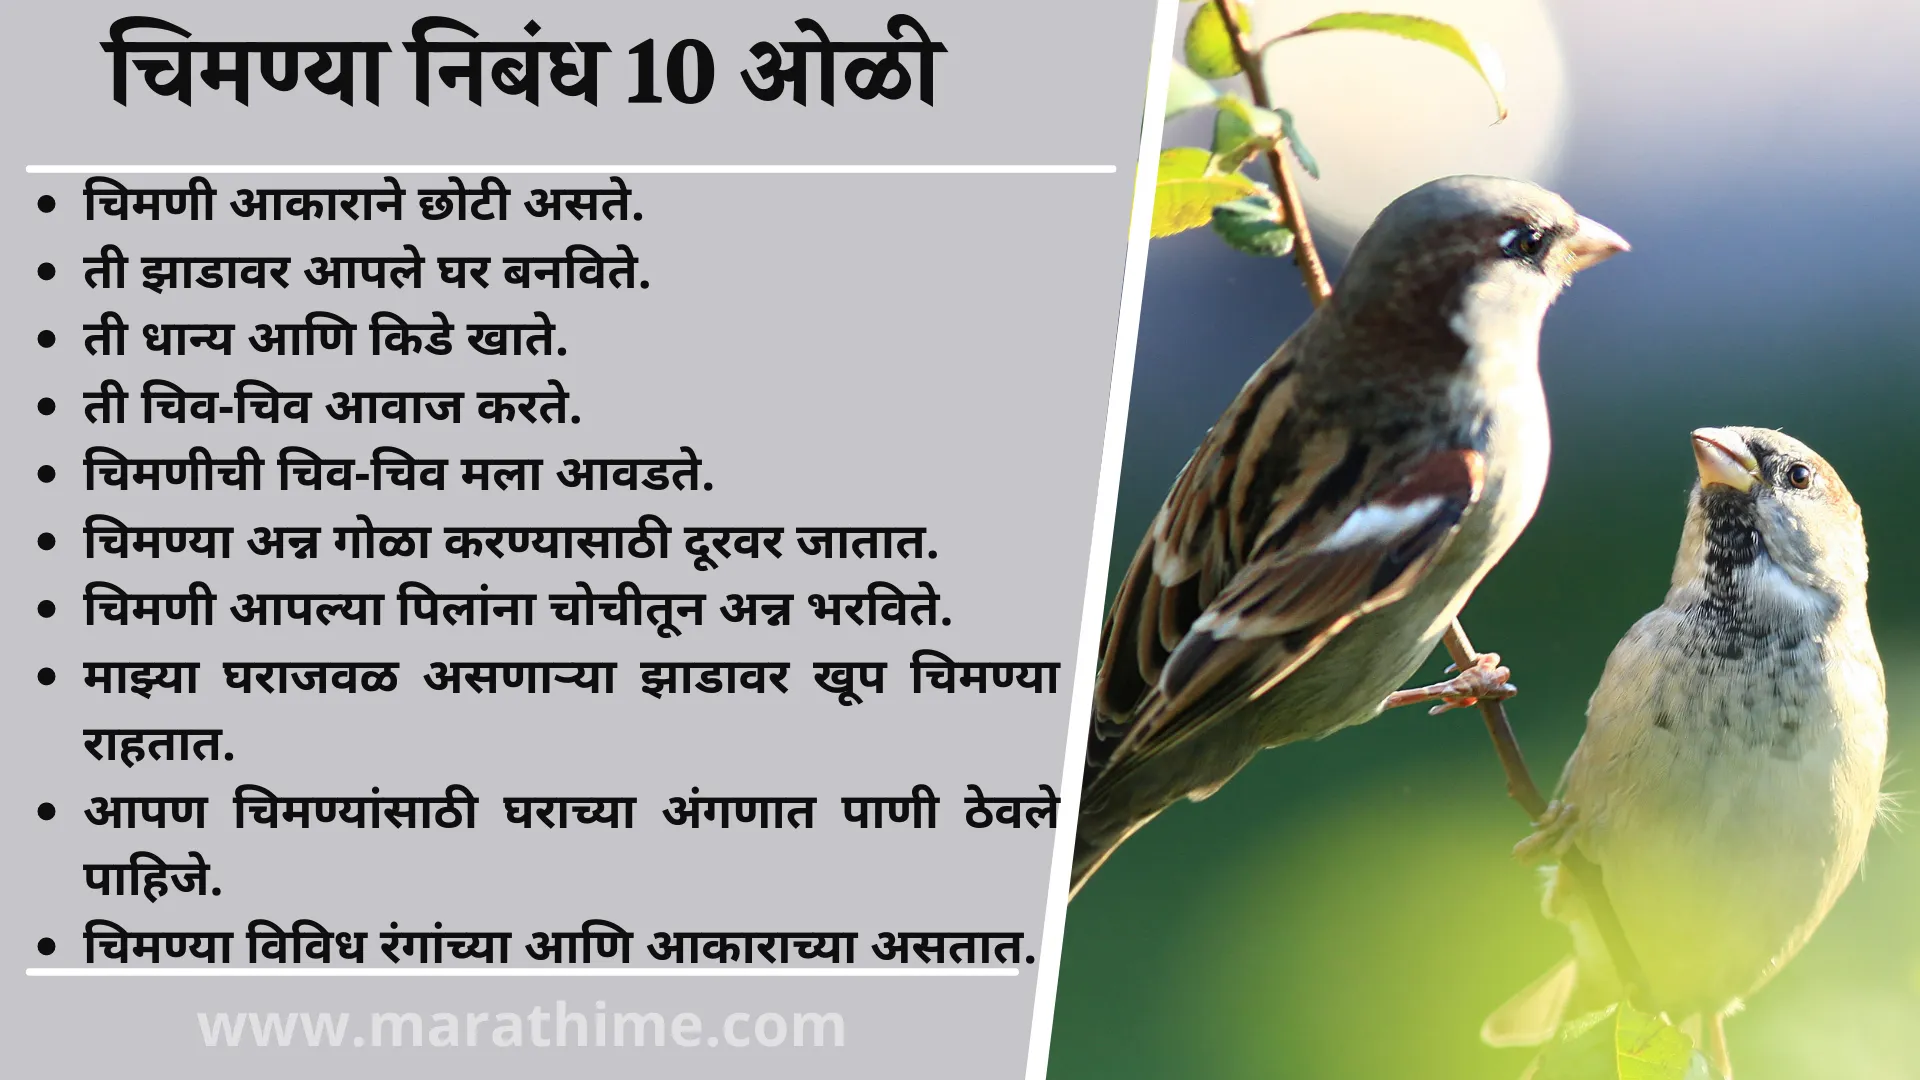 चिमणी पक्षी निबंध 10 ओळी, 10 Lines On Chimney Bird in Marathi, Chimney Bird Essay in Marathi